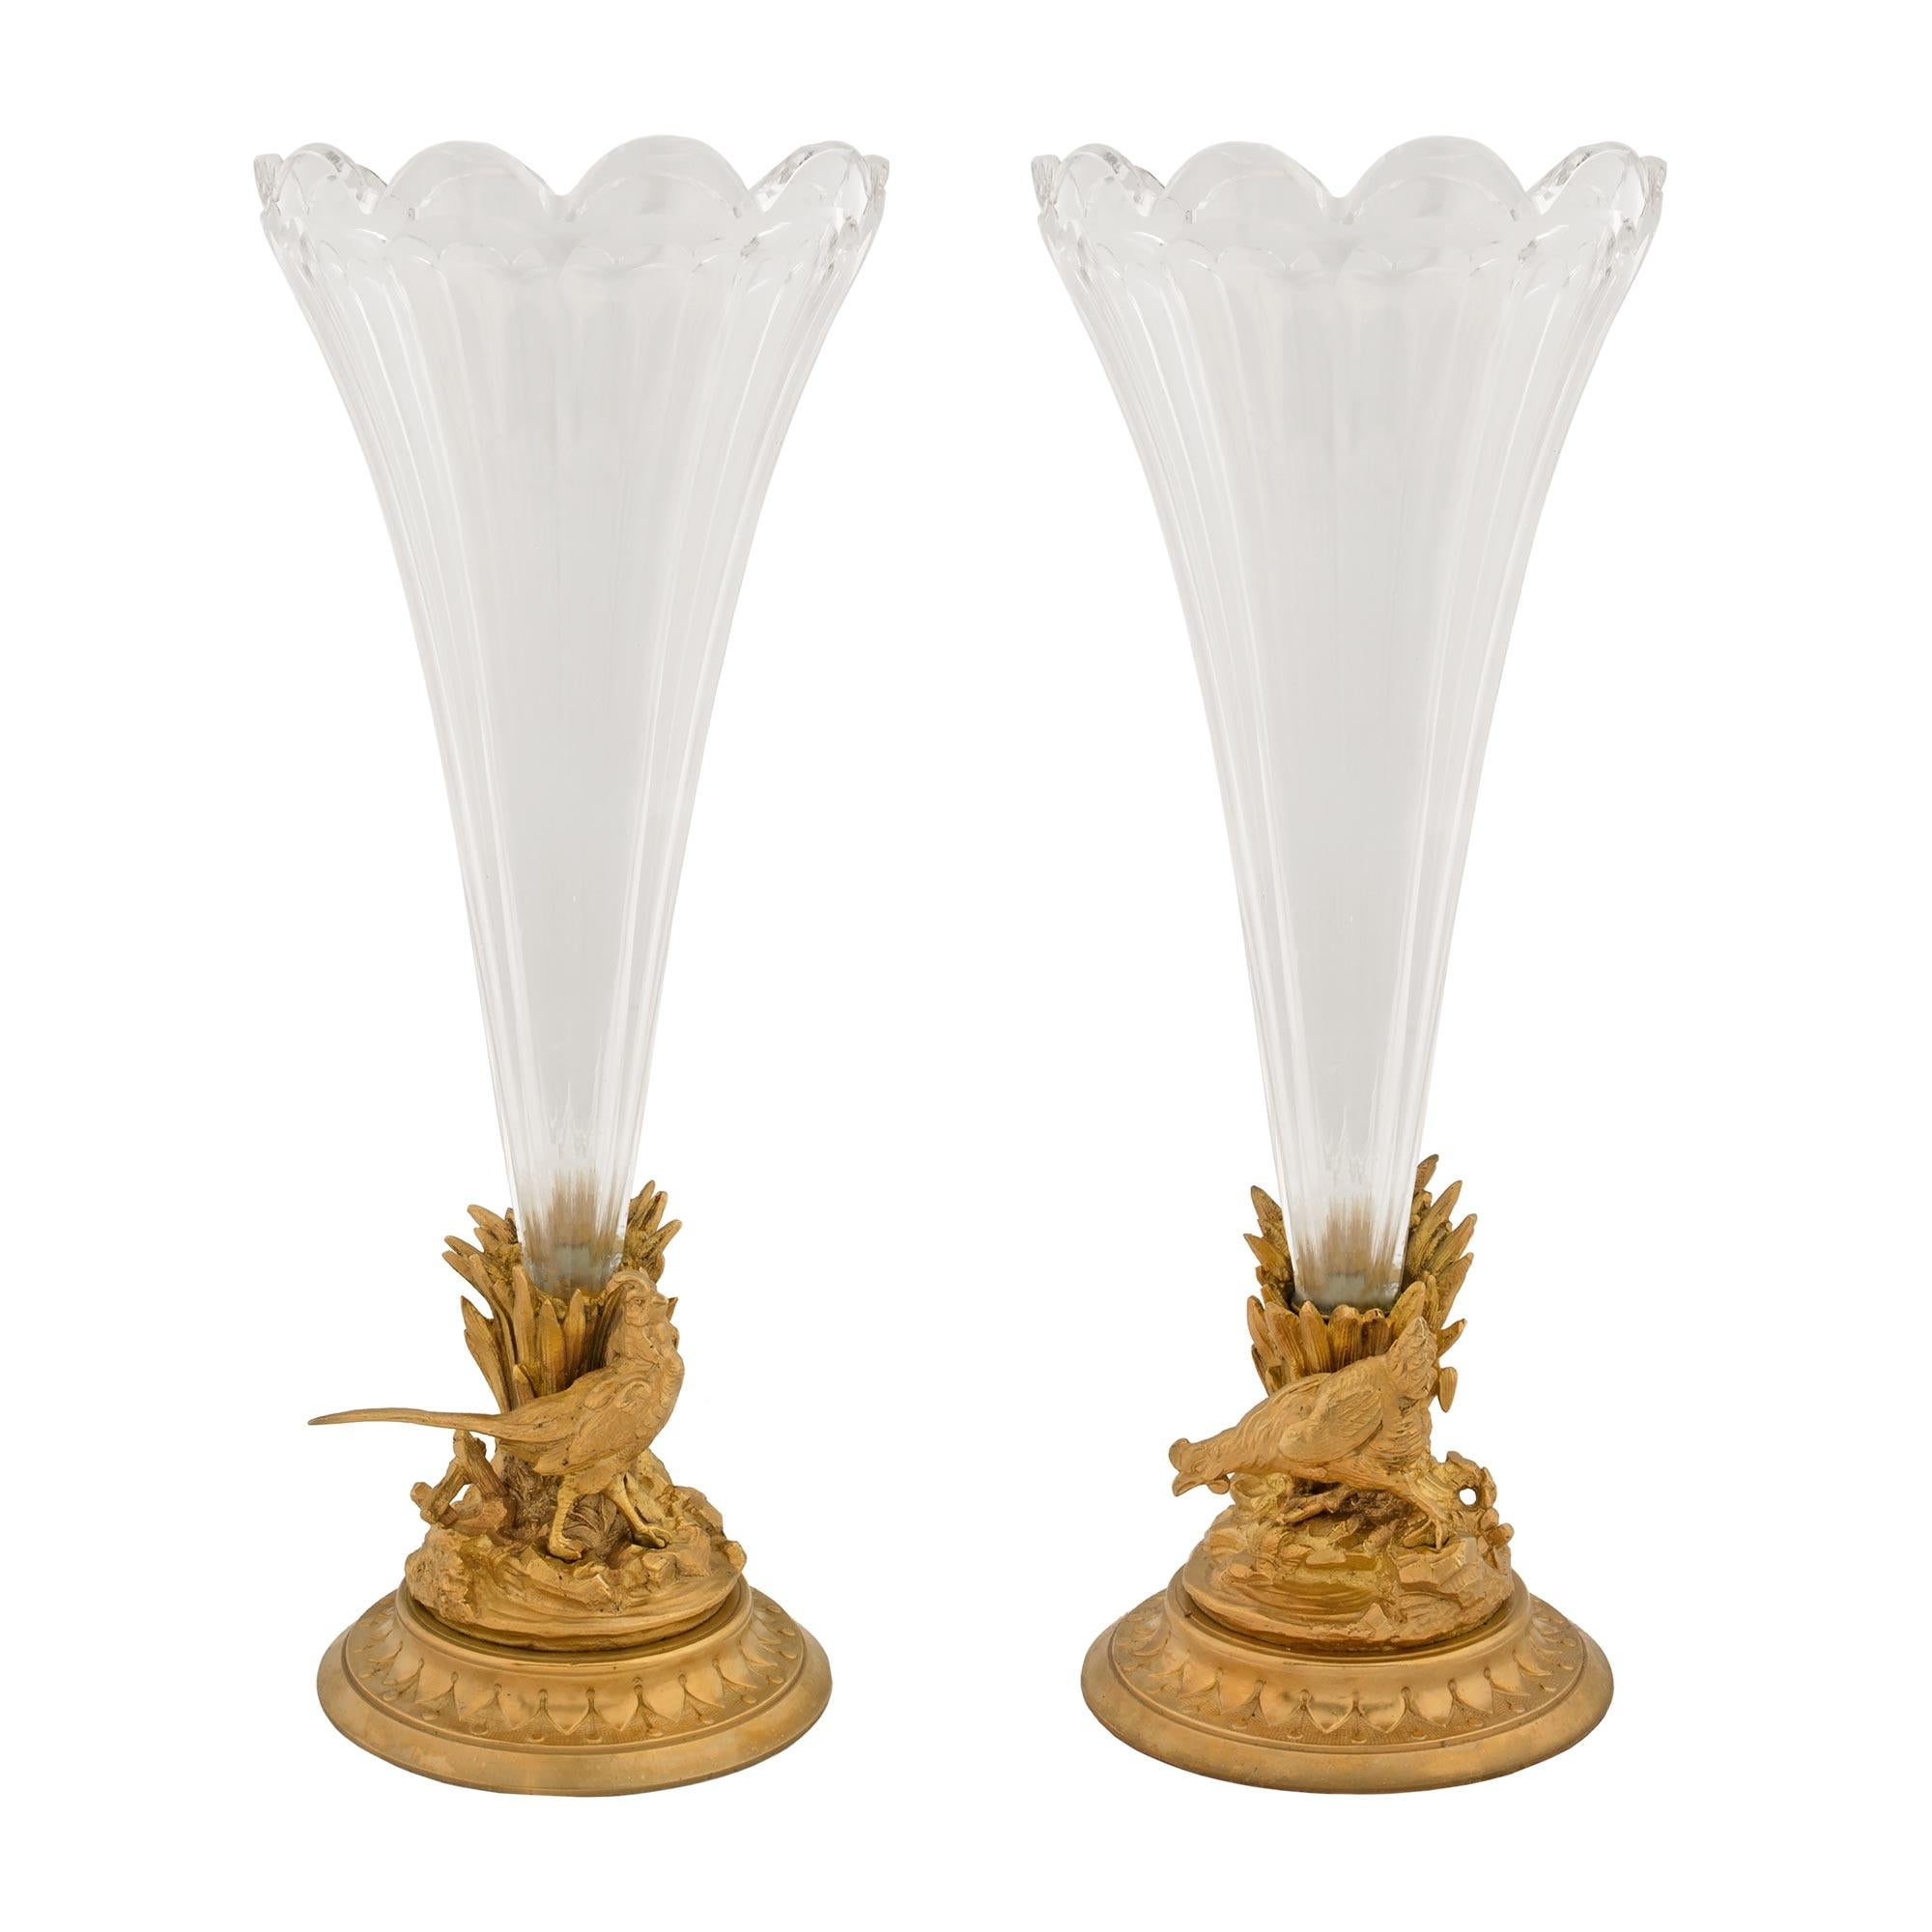 Une paire de vases en cristal et bronze doré de Baccarat du 19ème siècle. Chaque vase est surélevé par une base circulaire mouchetée avec un motif décoratif enveloppant. Chaque vase présente un design impressionnant et richement détaillé, semblable